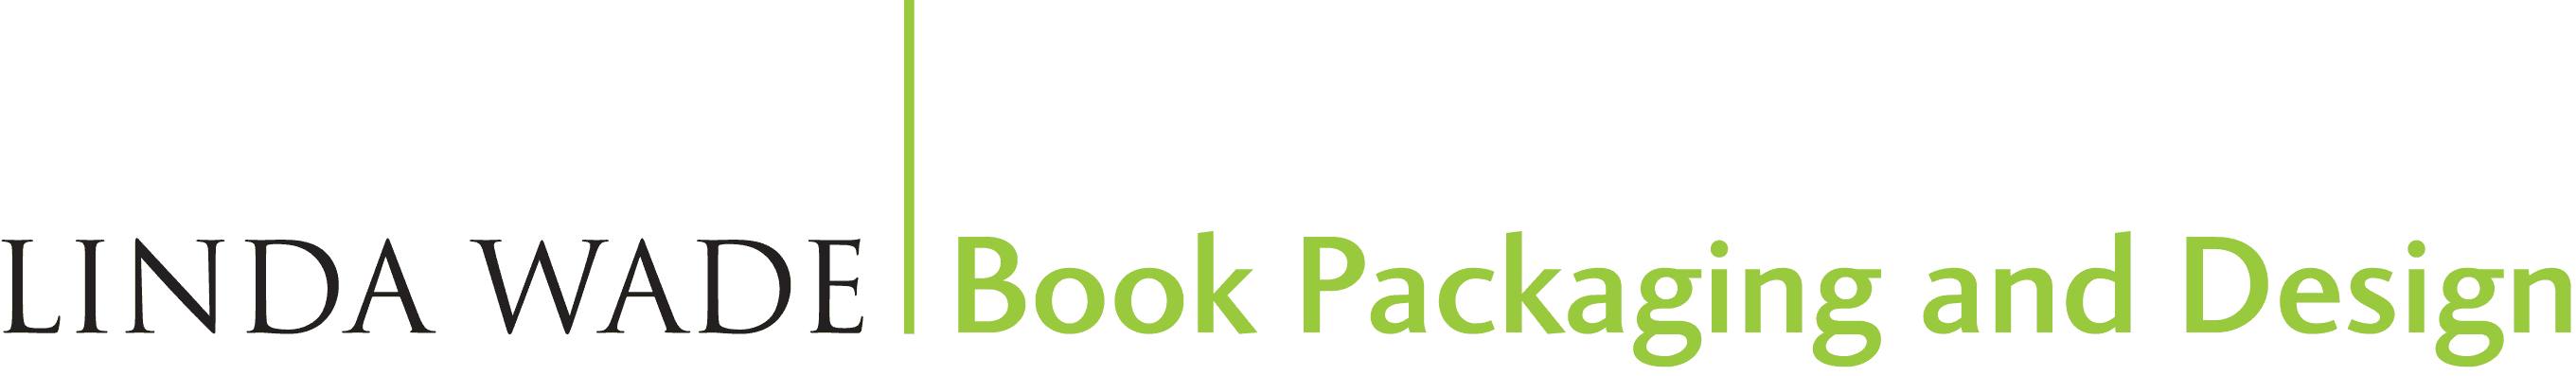 Linda Wade Book Packaging and Design